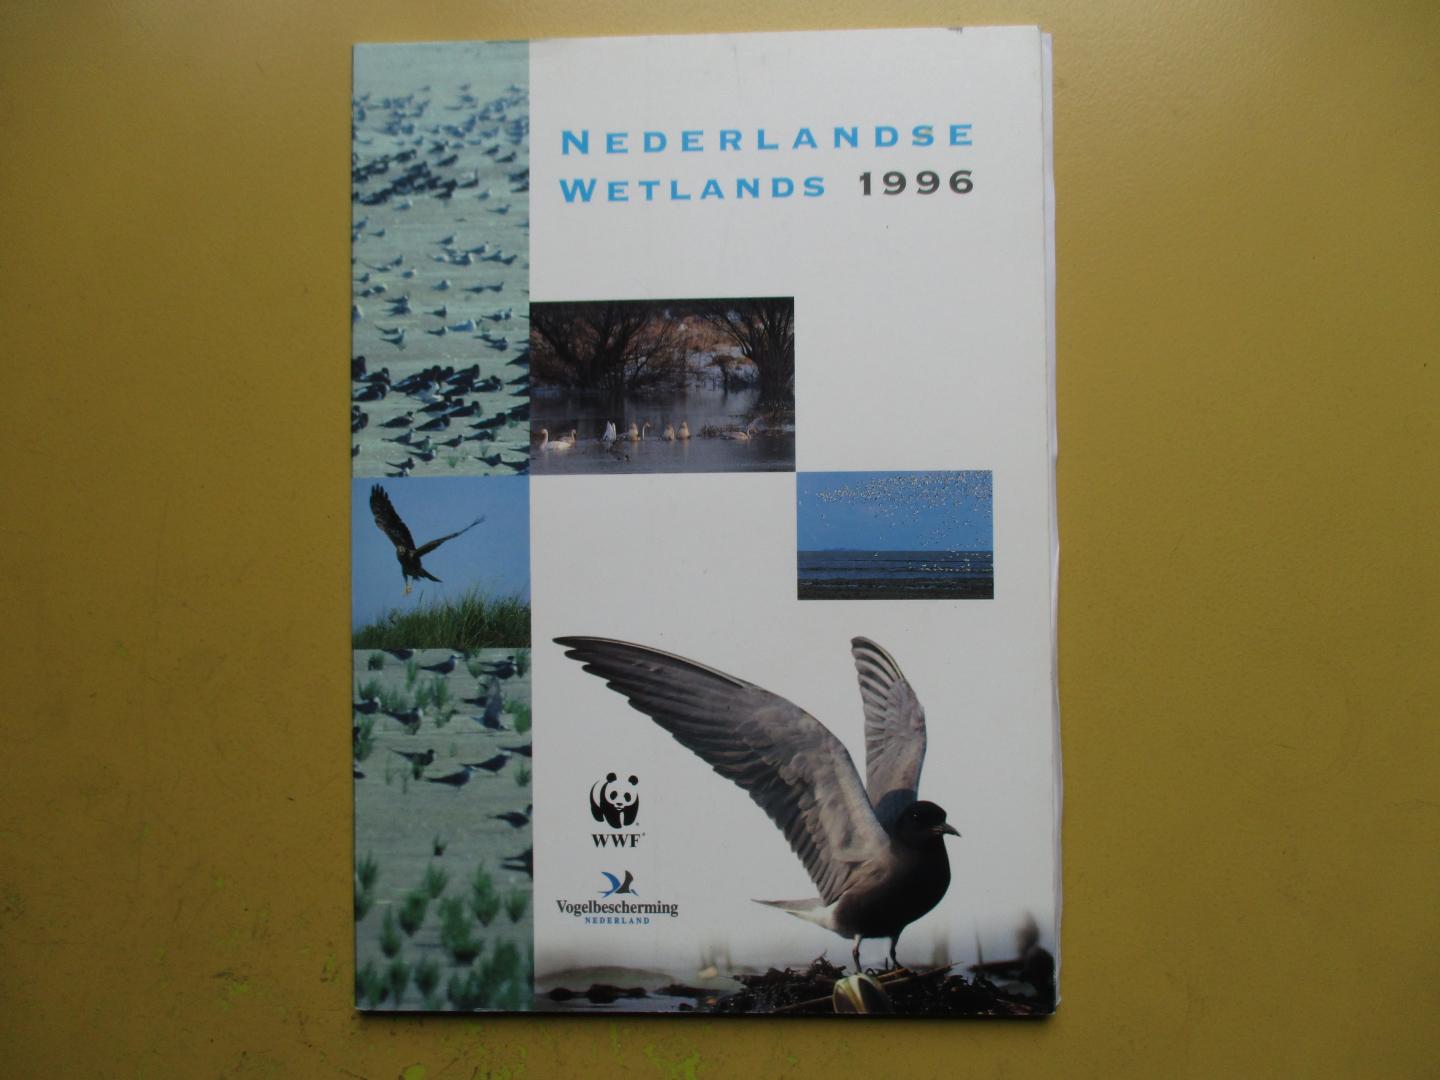 Tempel, Riet van den - Nederlandse Wetlands 1996, vogel en natuurbescherming